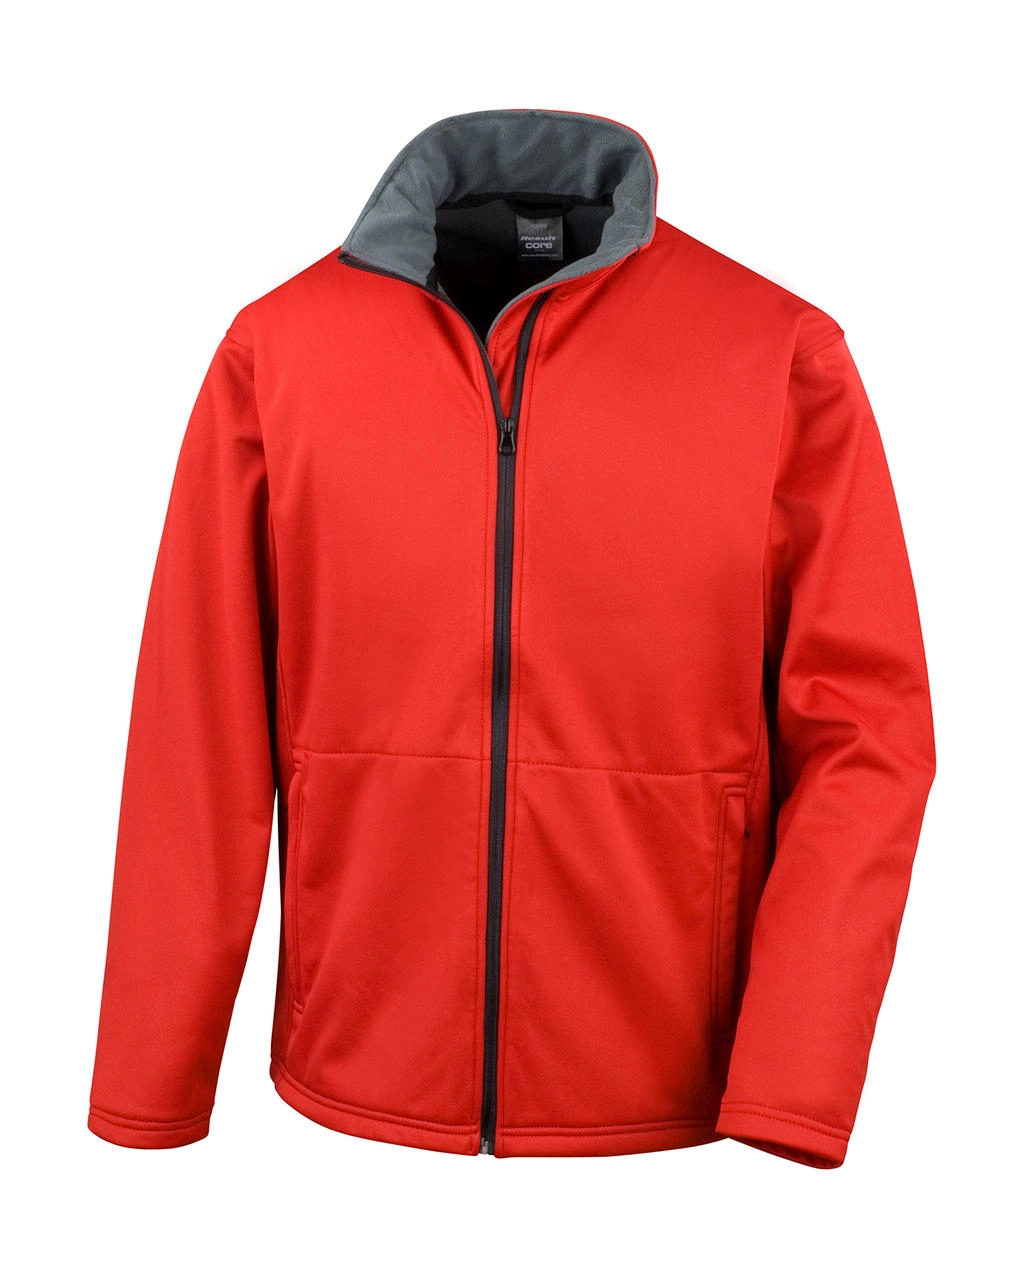 Core Softshell Jacket zum Besticken und Bedrucken in der Farbe Red mit Ihren Logo, Schriftzug oder Motiv.